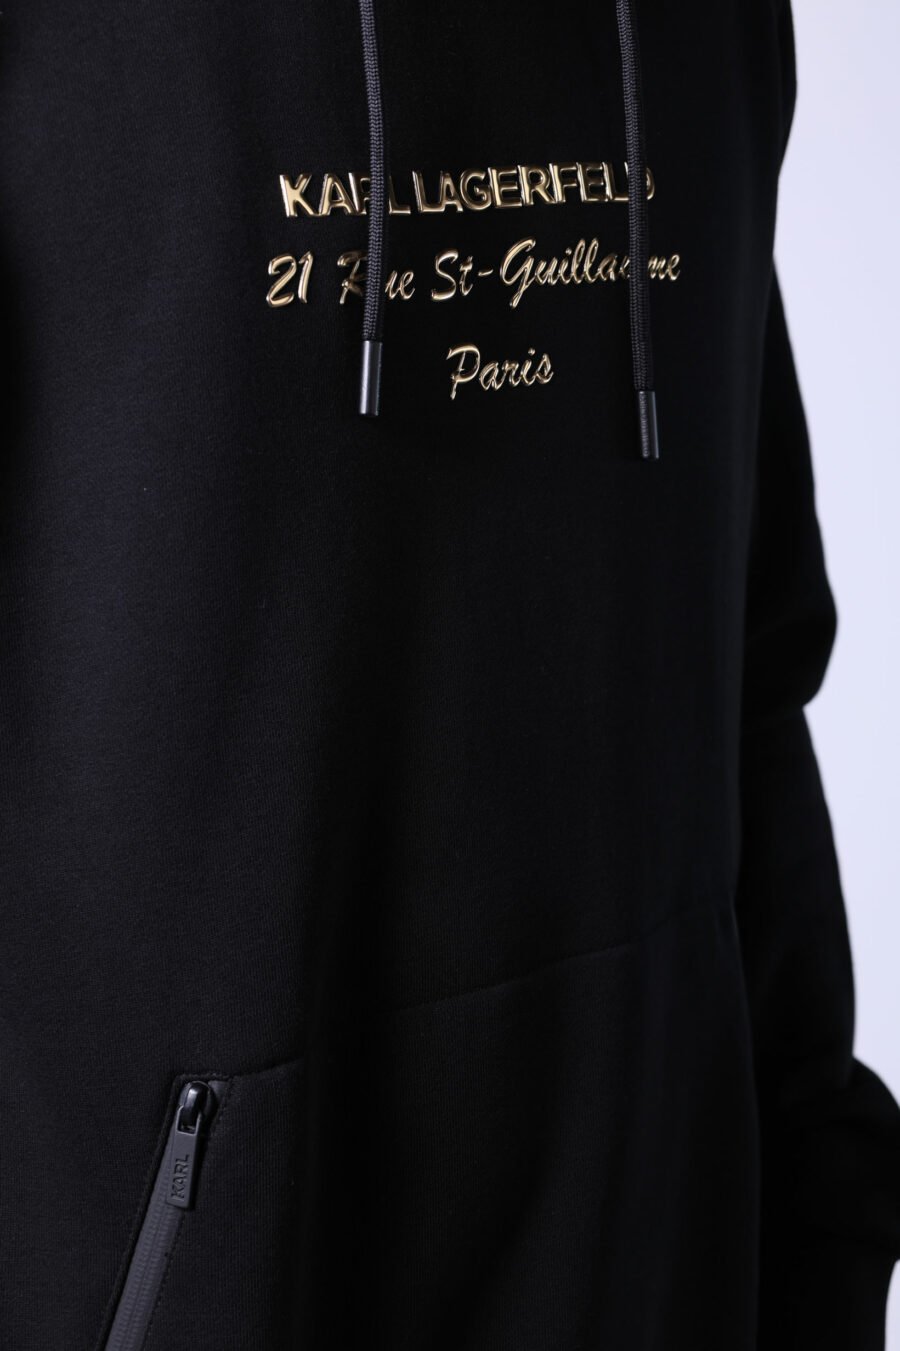 Camisola com capuz preta com logótipo "rue st guillaume" em letras douradas - Untitled Catalog 05729